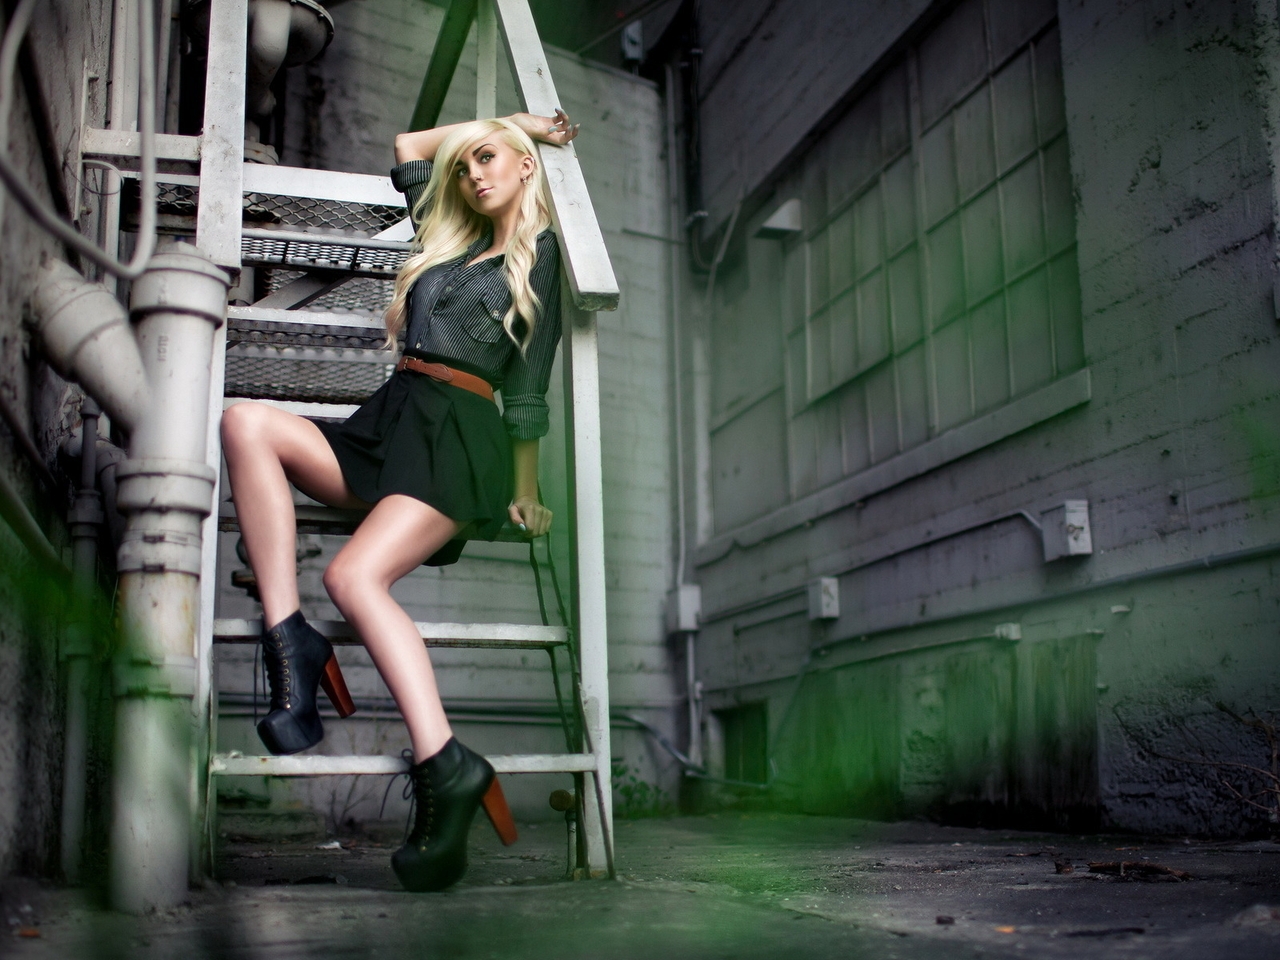 Image: Girl, blonde, sitting, staircase, boots, heels, platform, posing, lane